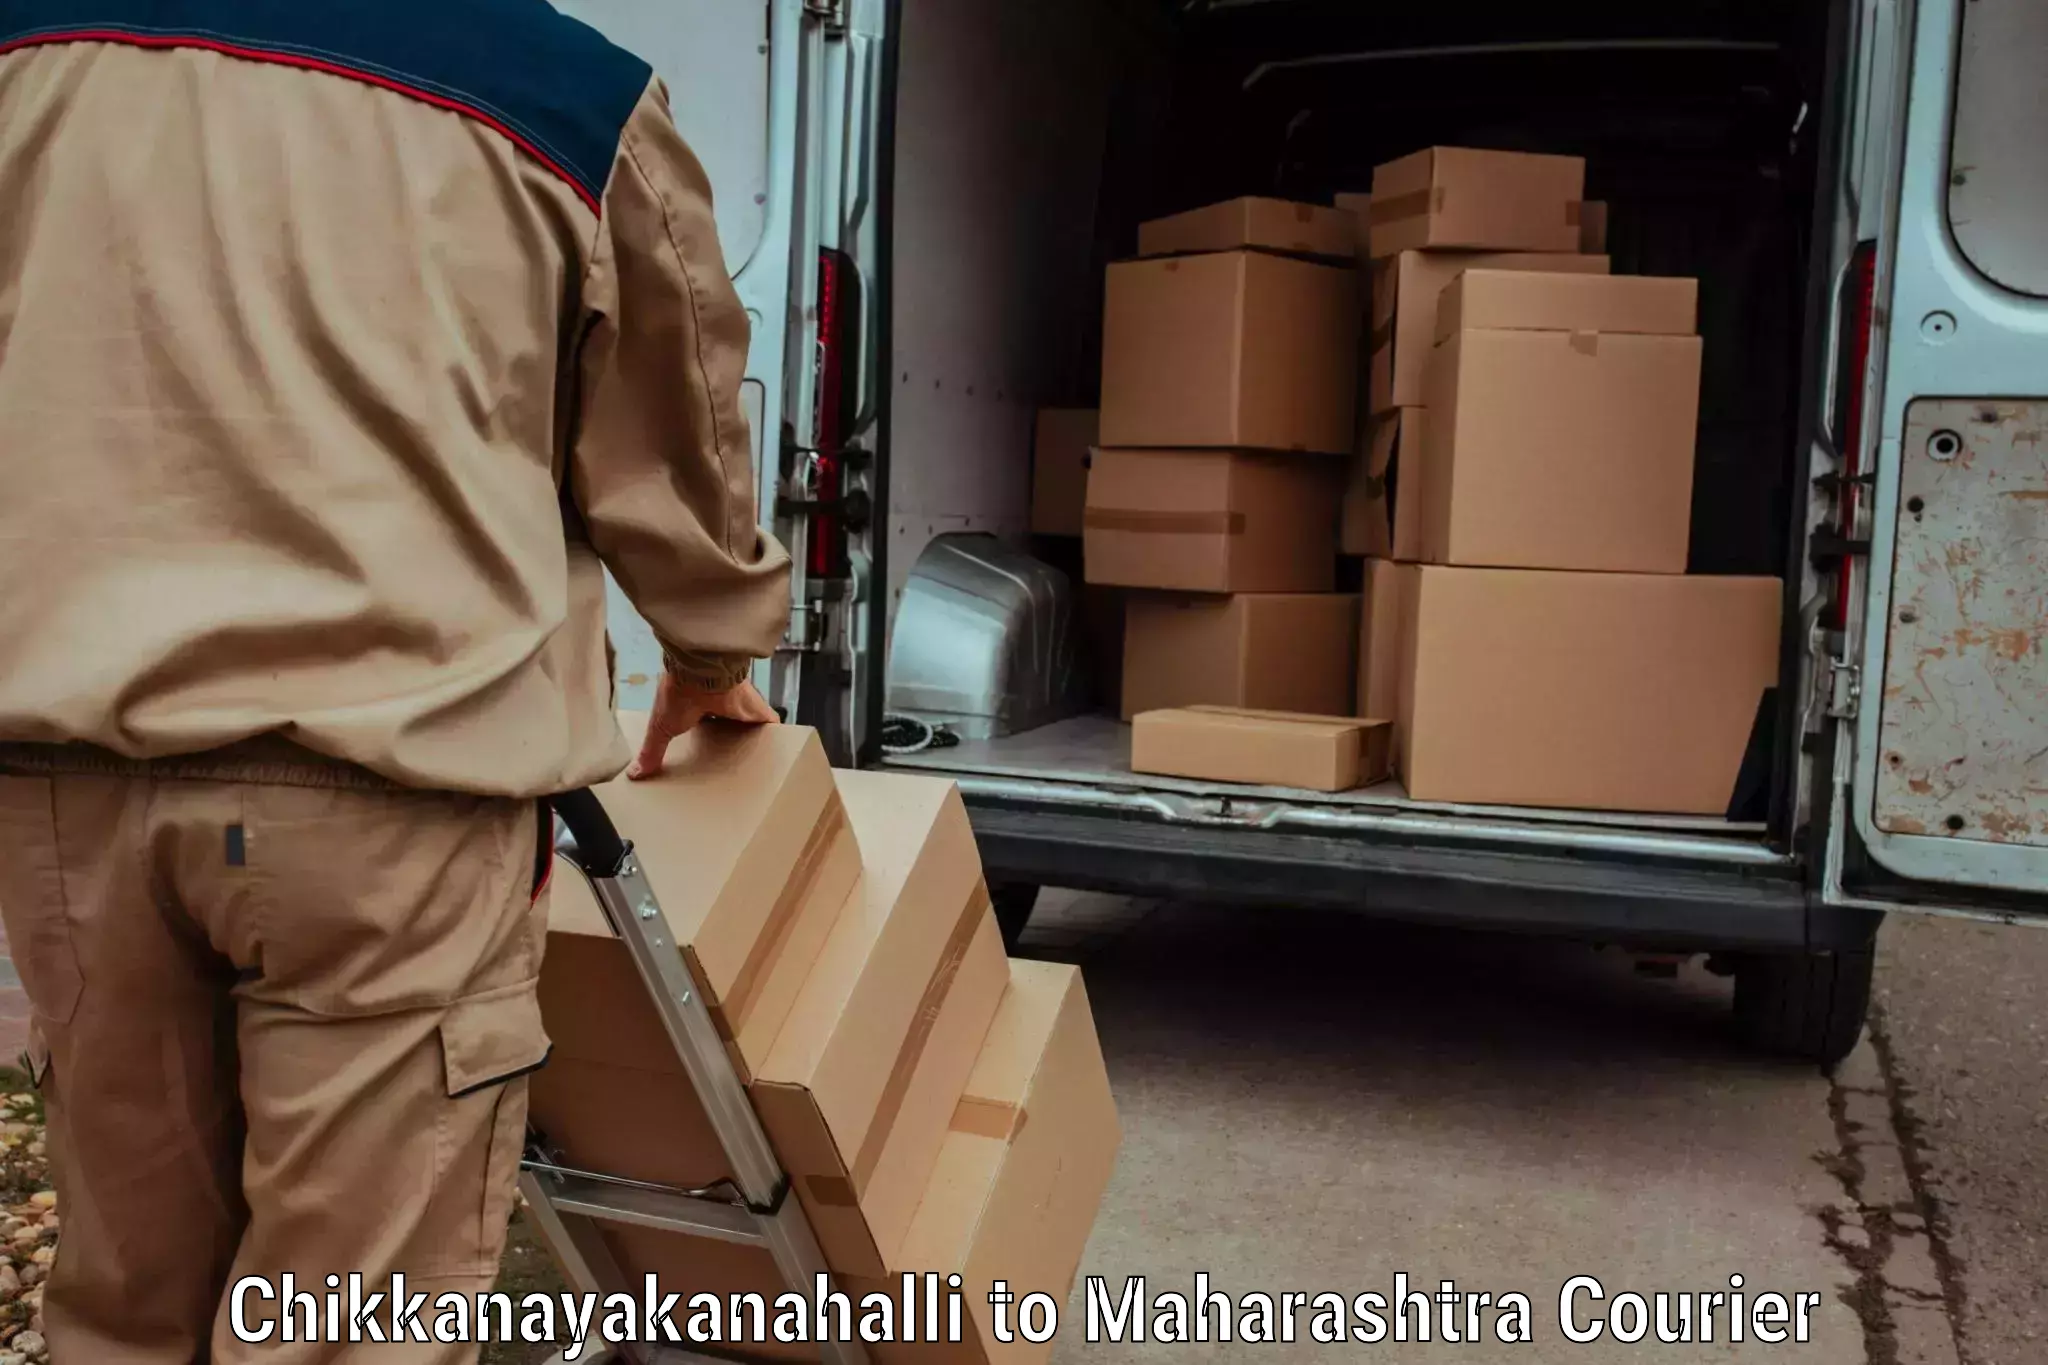 Global shipping solutions Chikkanayakanahalli to Khandala Pune